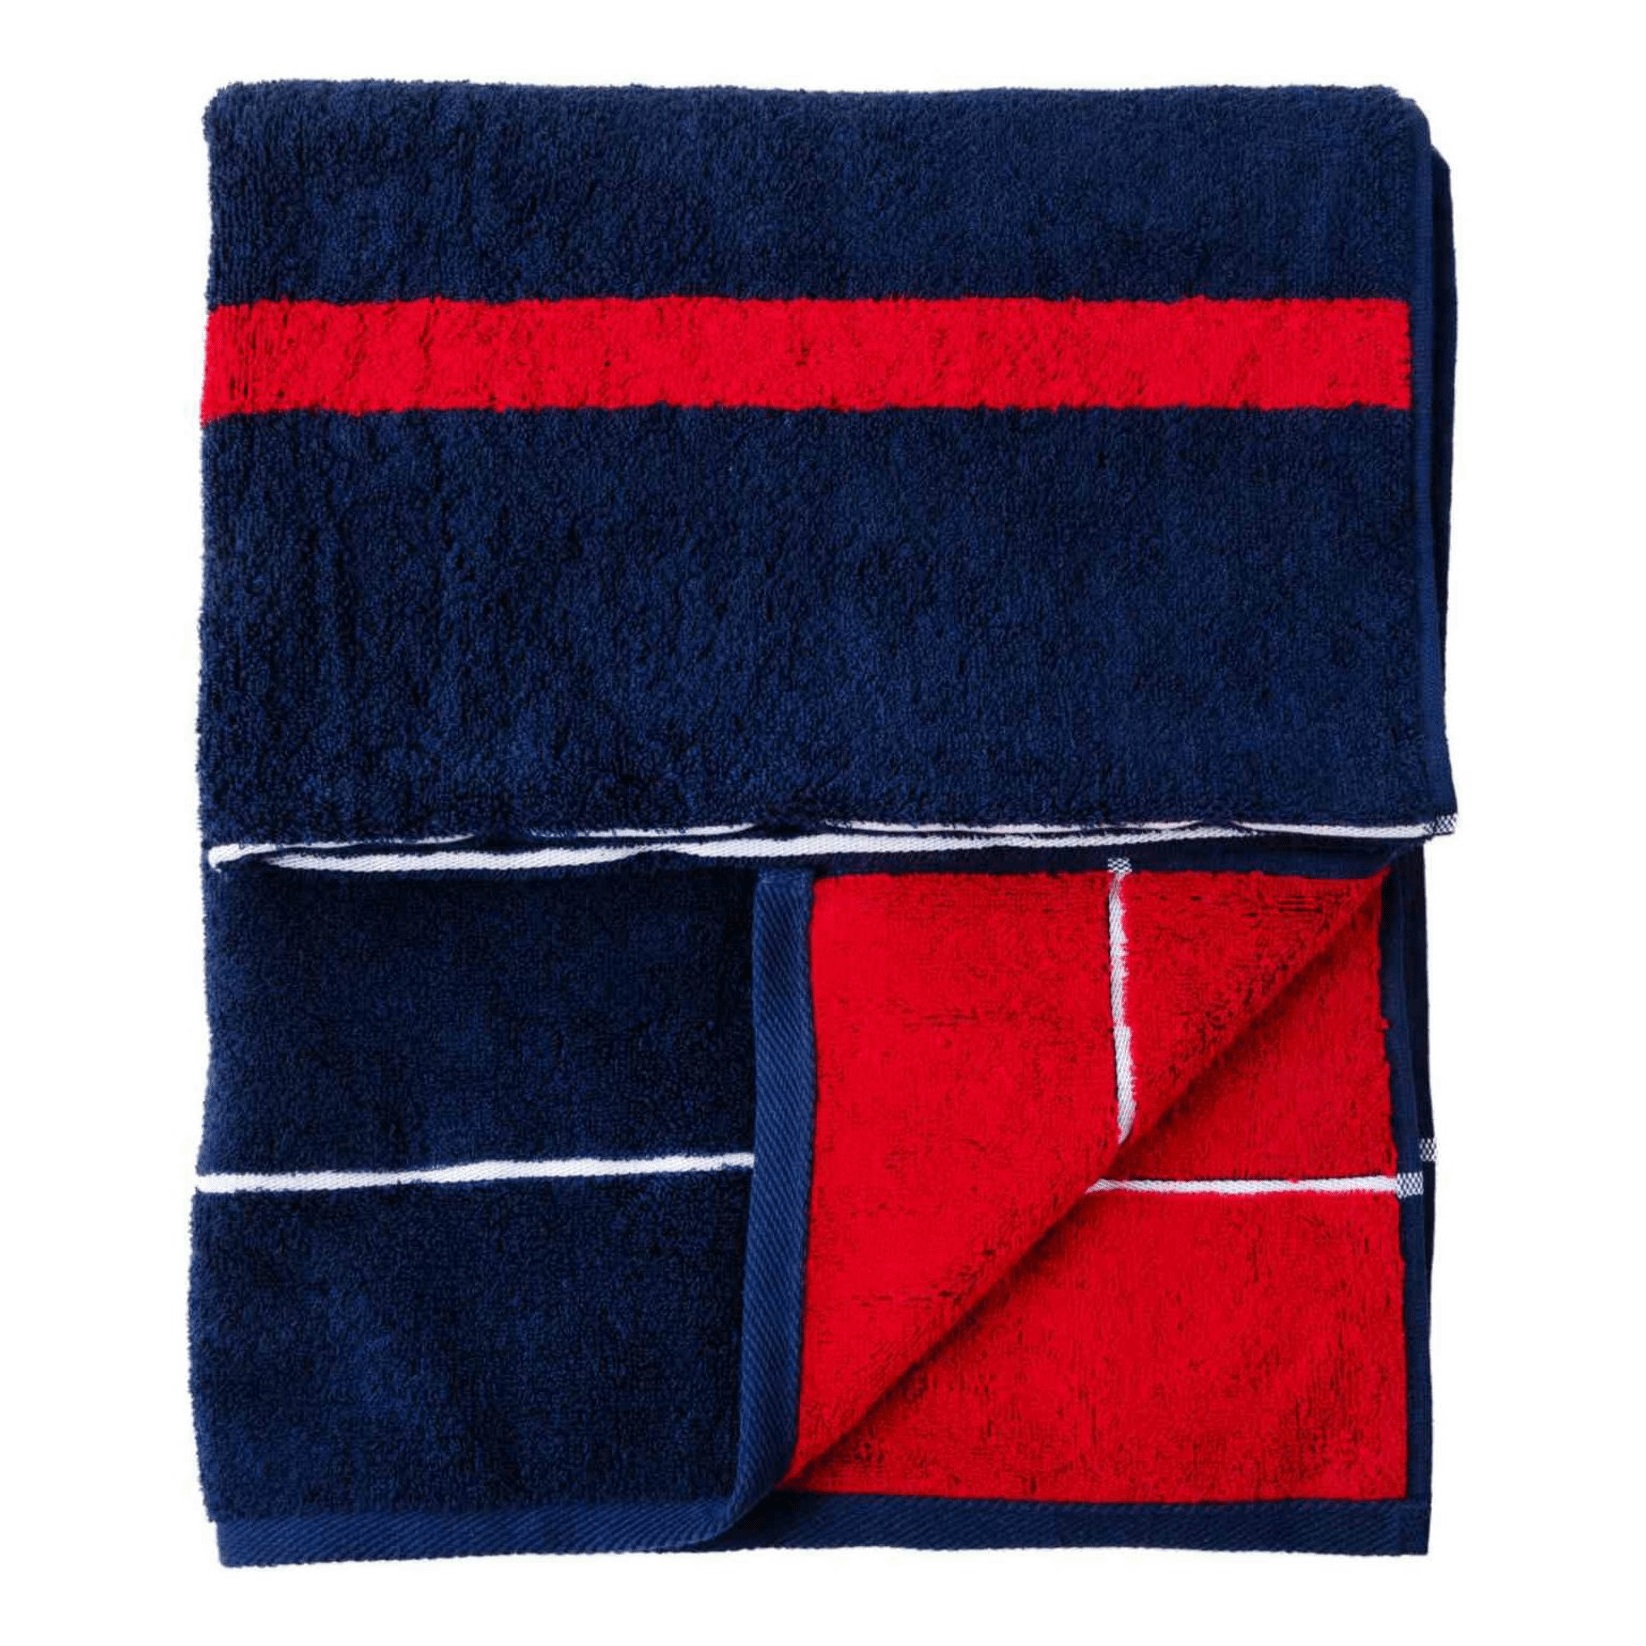 Полотенце DM Текстиль Schooner 50 х 90 см махровое темно-синее-красное